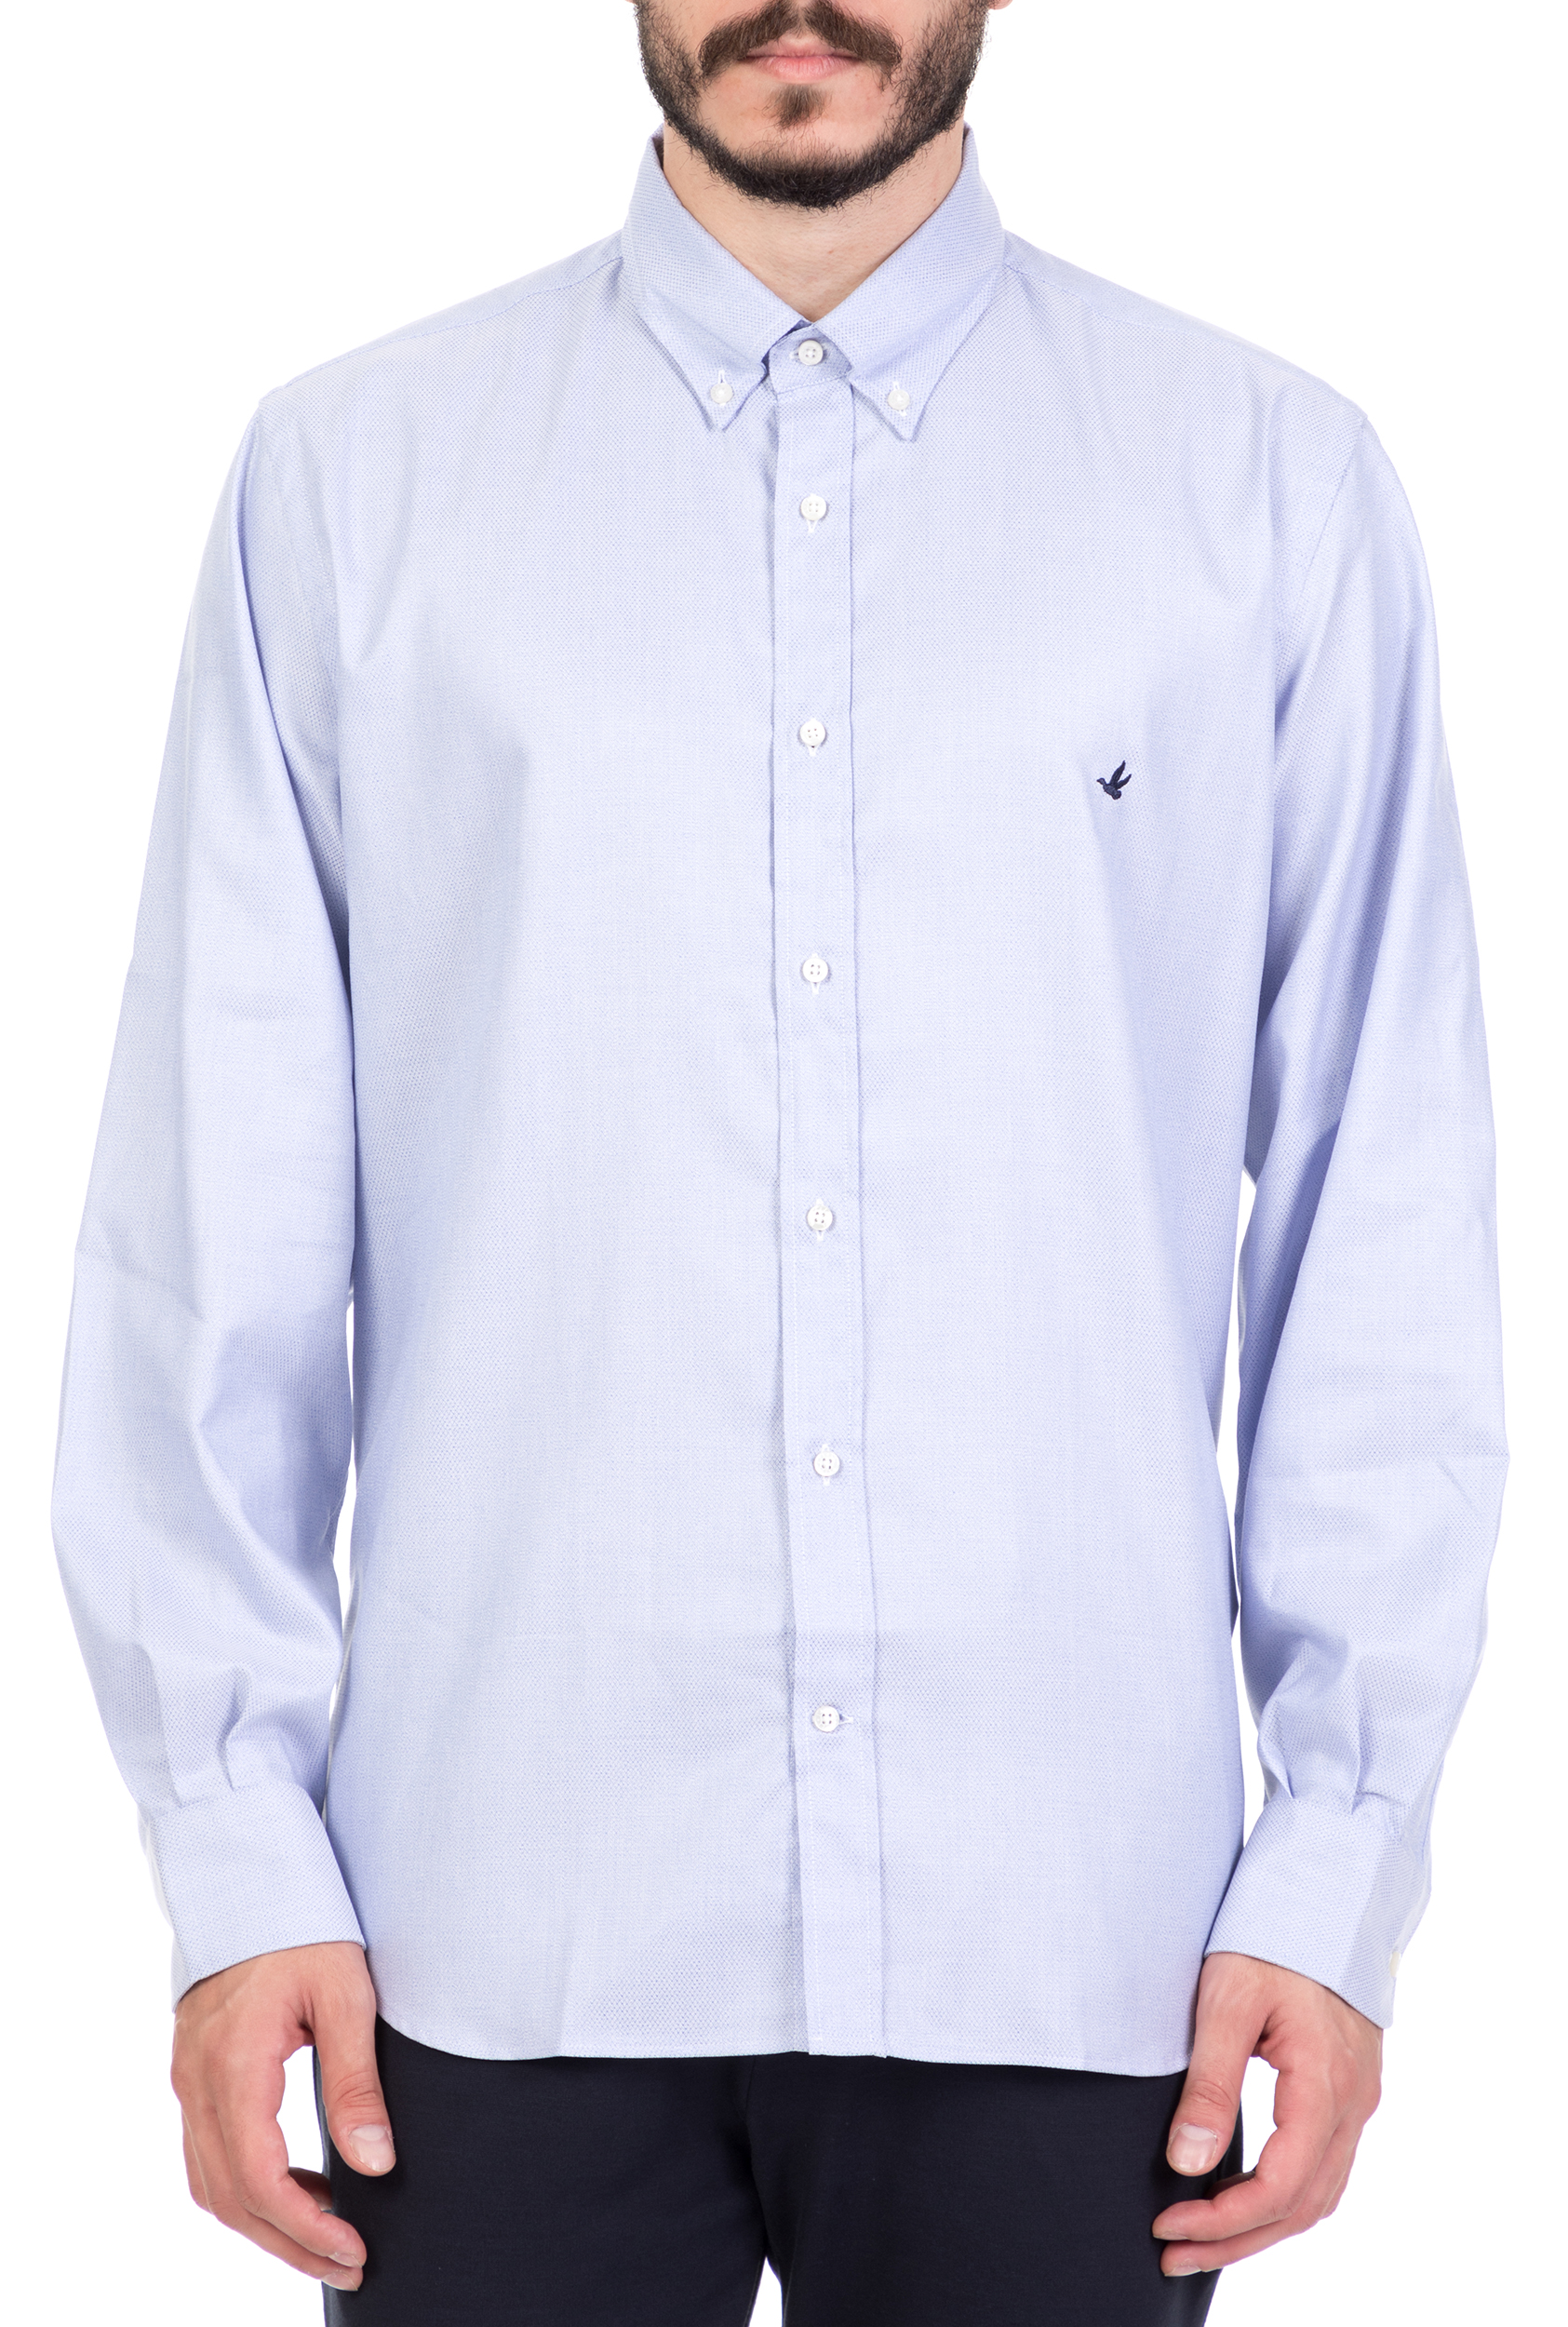 Ανδρικά/Ρούχα/Πουκάμισα/Μακρυμάνικα BROOKSFIELD - Ανδρικό μακρυμάνικο πουκάμισο BROOKSFIELD γαλάζιο